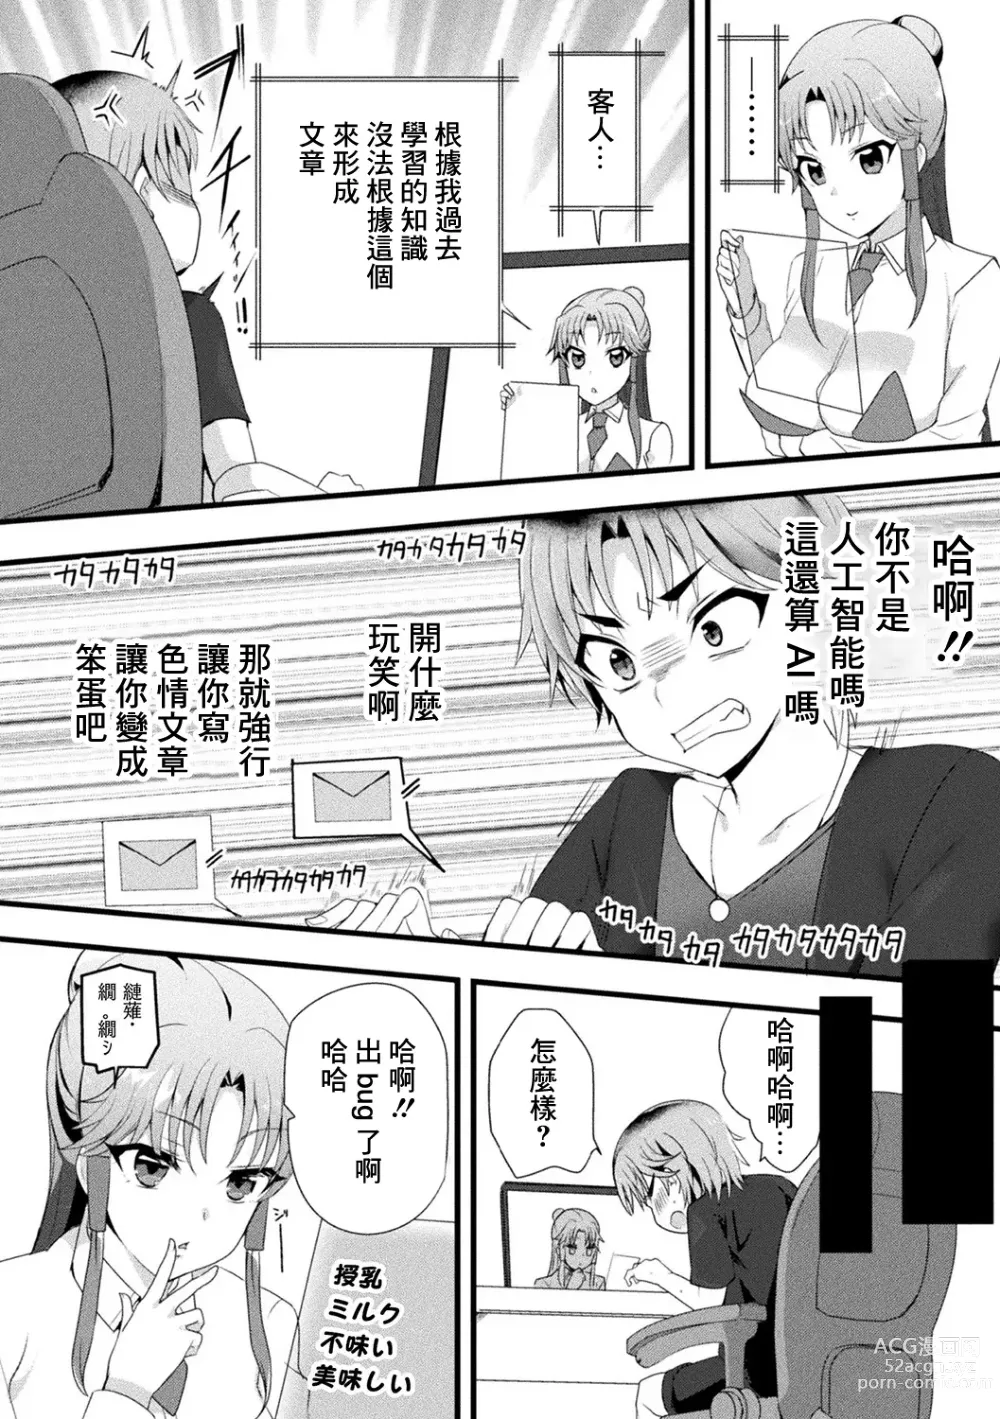 Page 2 of manga Mama Doko Doko - Mom! Where are you?